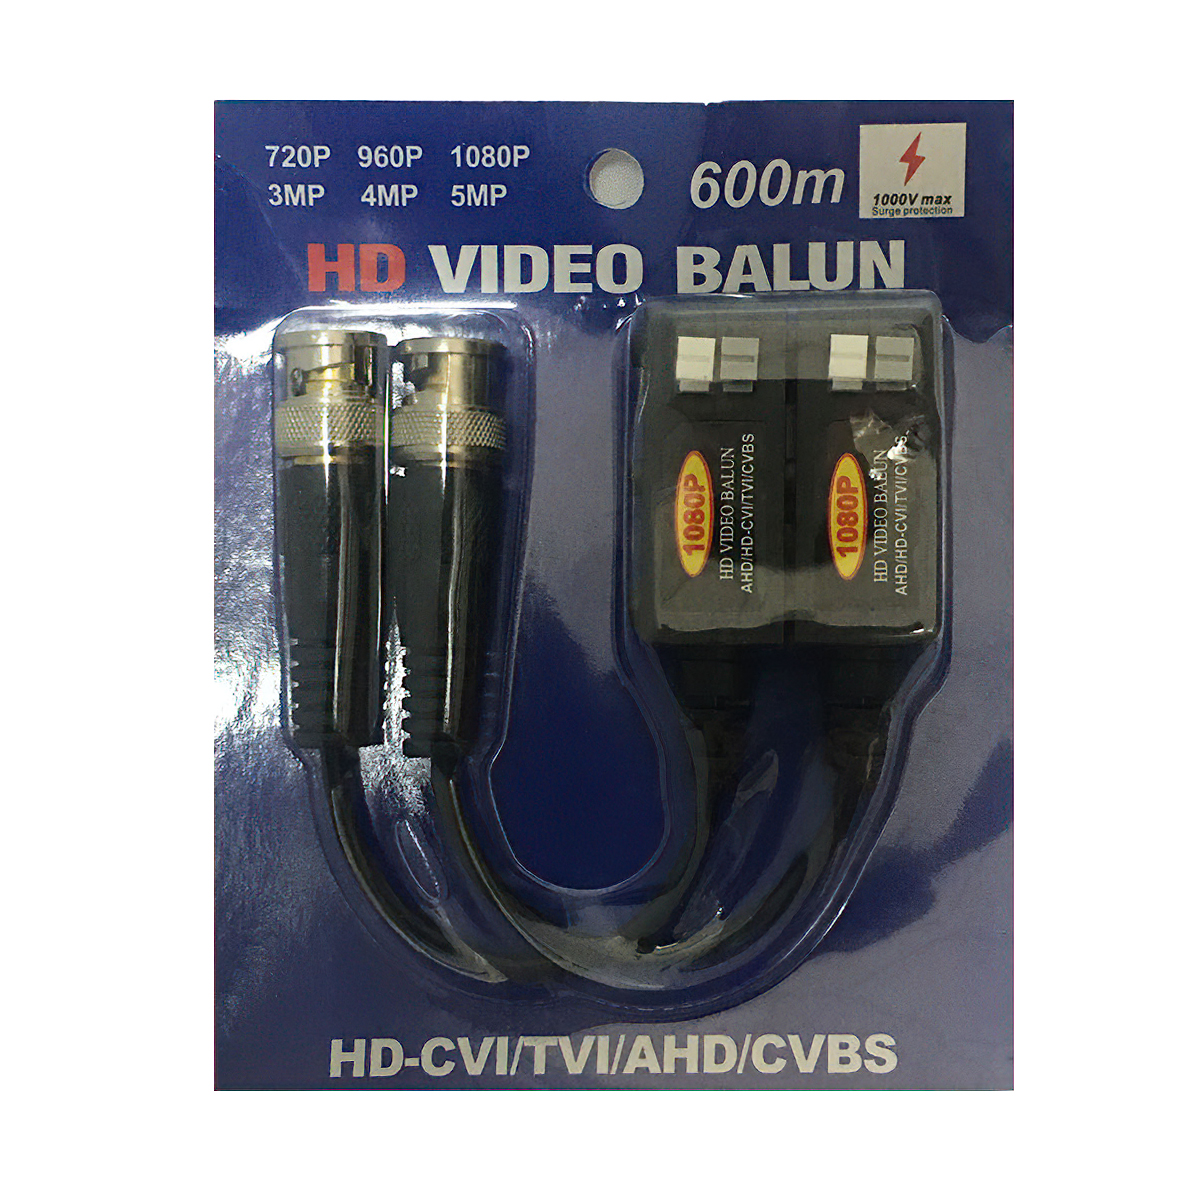 Vireo Balun BL-3203-HD (2 chiếc )  chống sét dành cho  camera CVI/VCBS/AHD/TVI